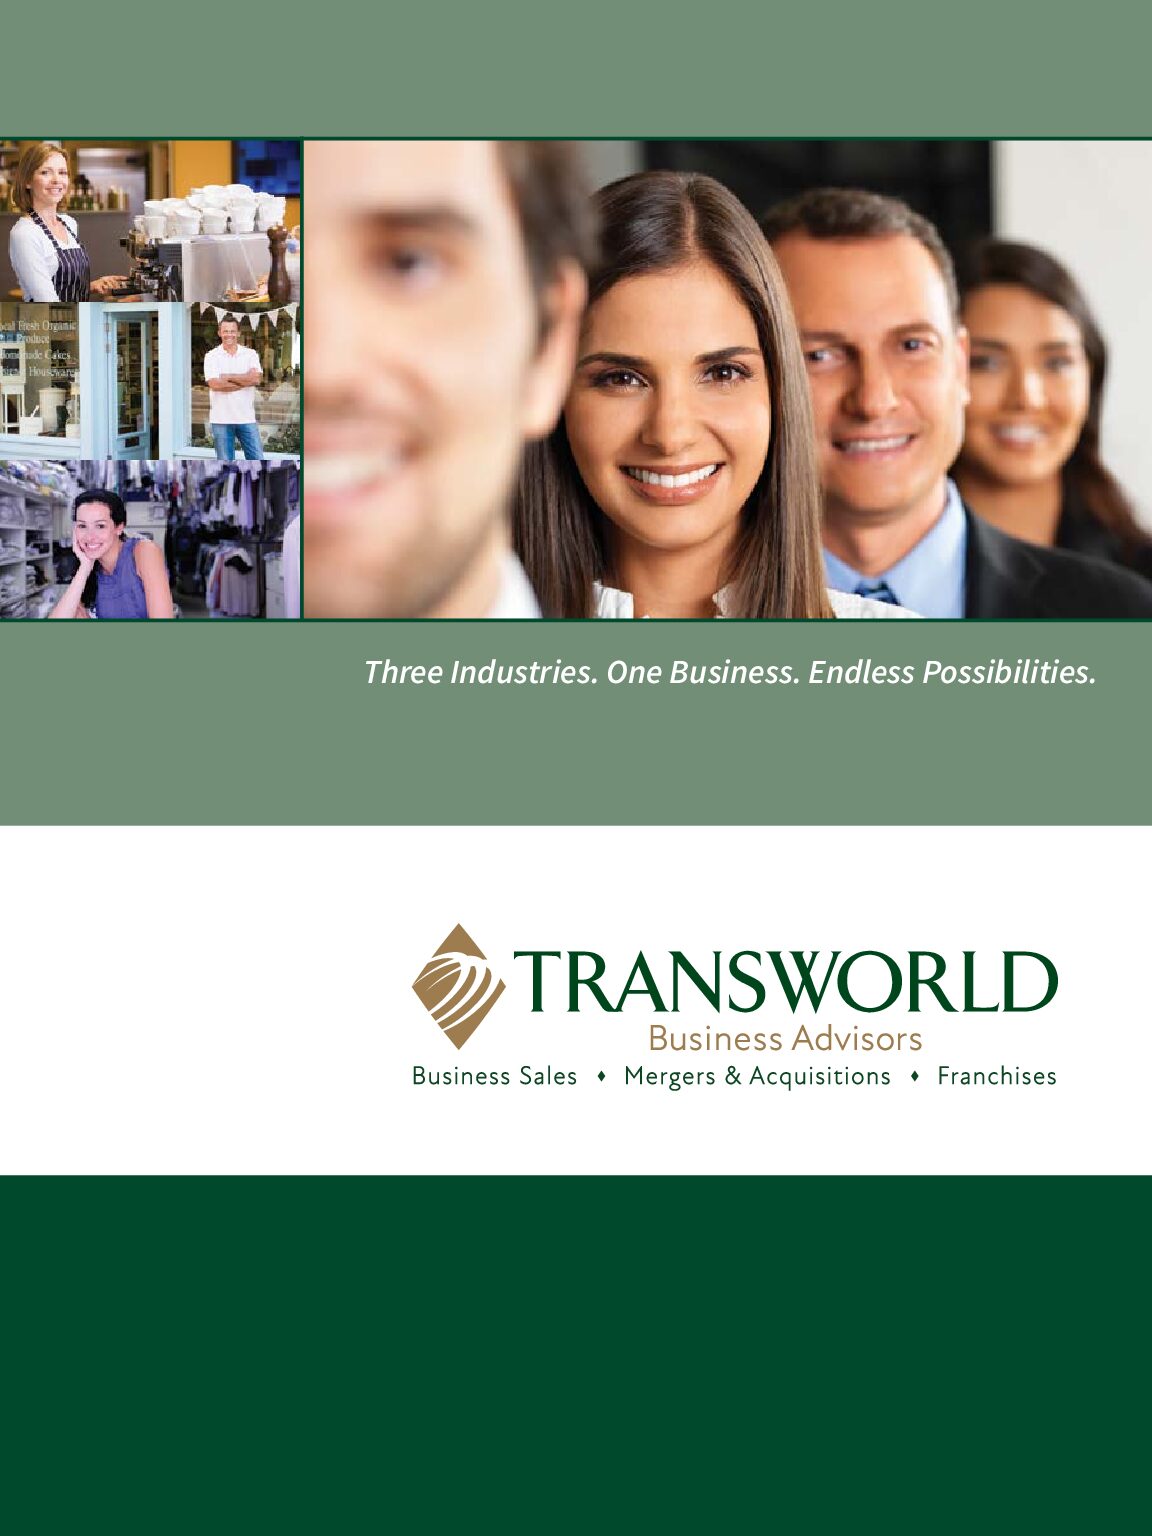 Transworld-Business-Advisors-Franchise-Brochure